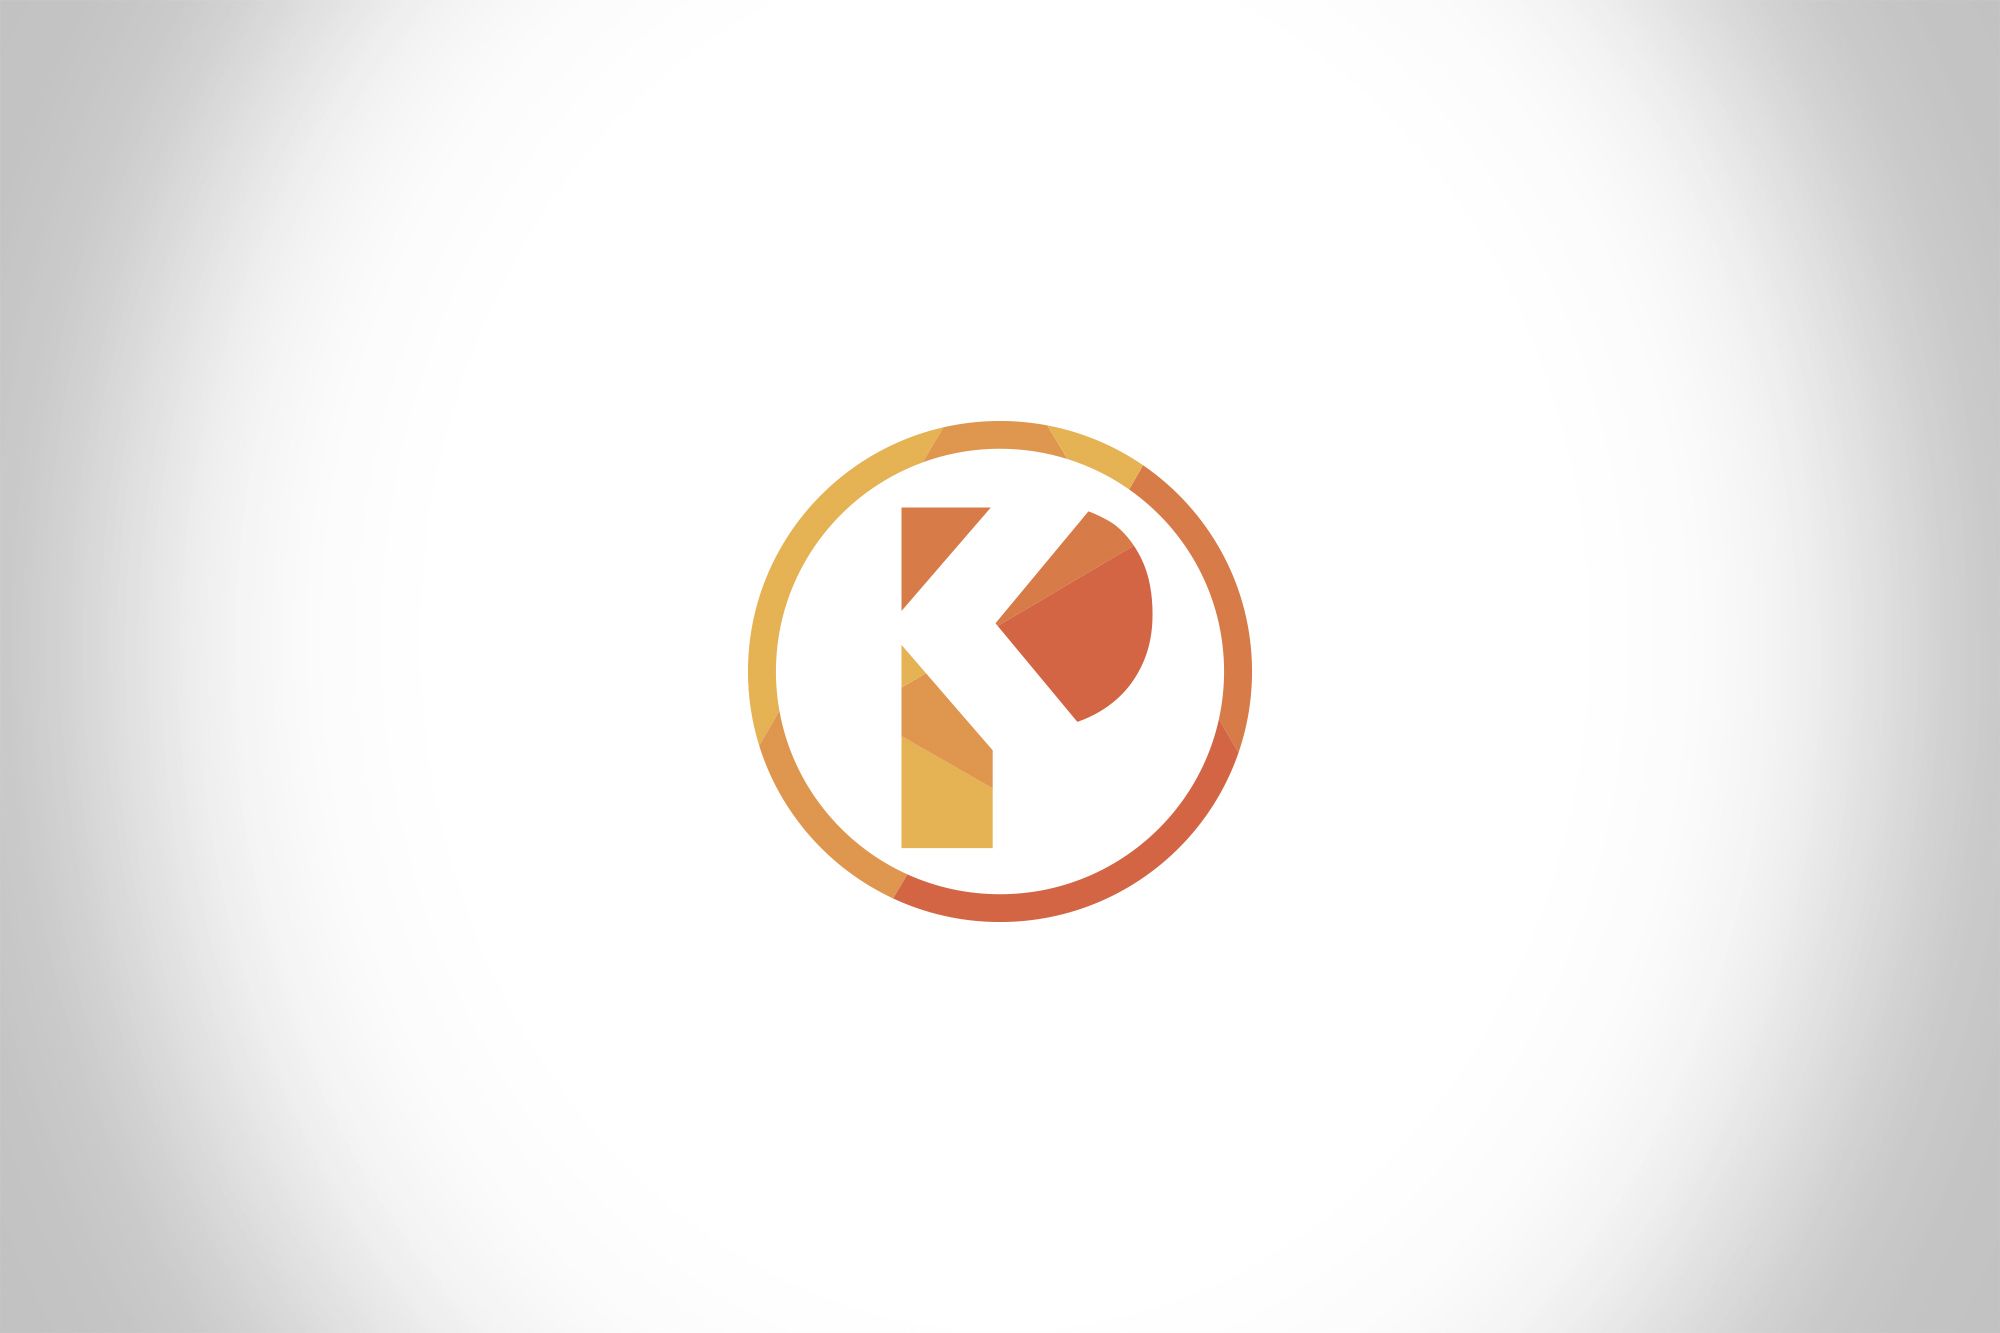 Лого и фирменный стиль для КонсультантПлюс-Ростов-на-Дону - дизайнер Da4erry